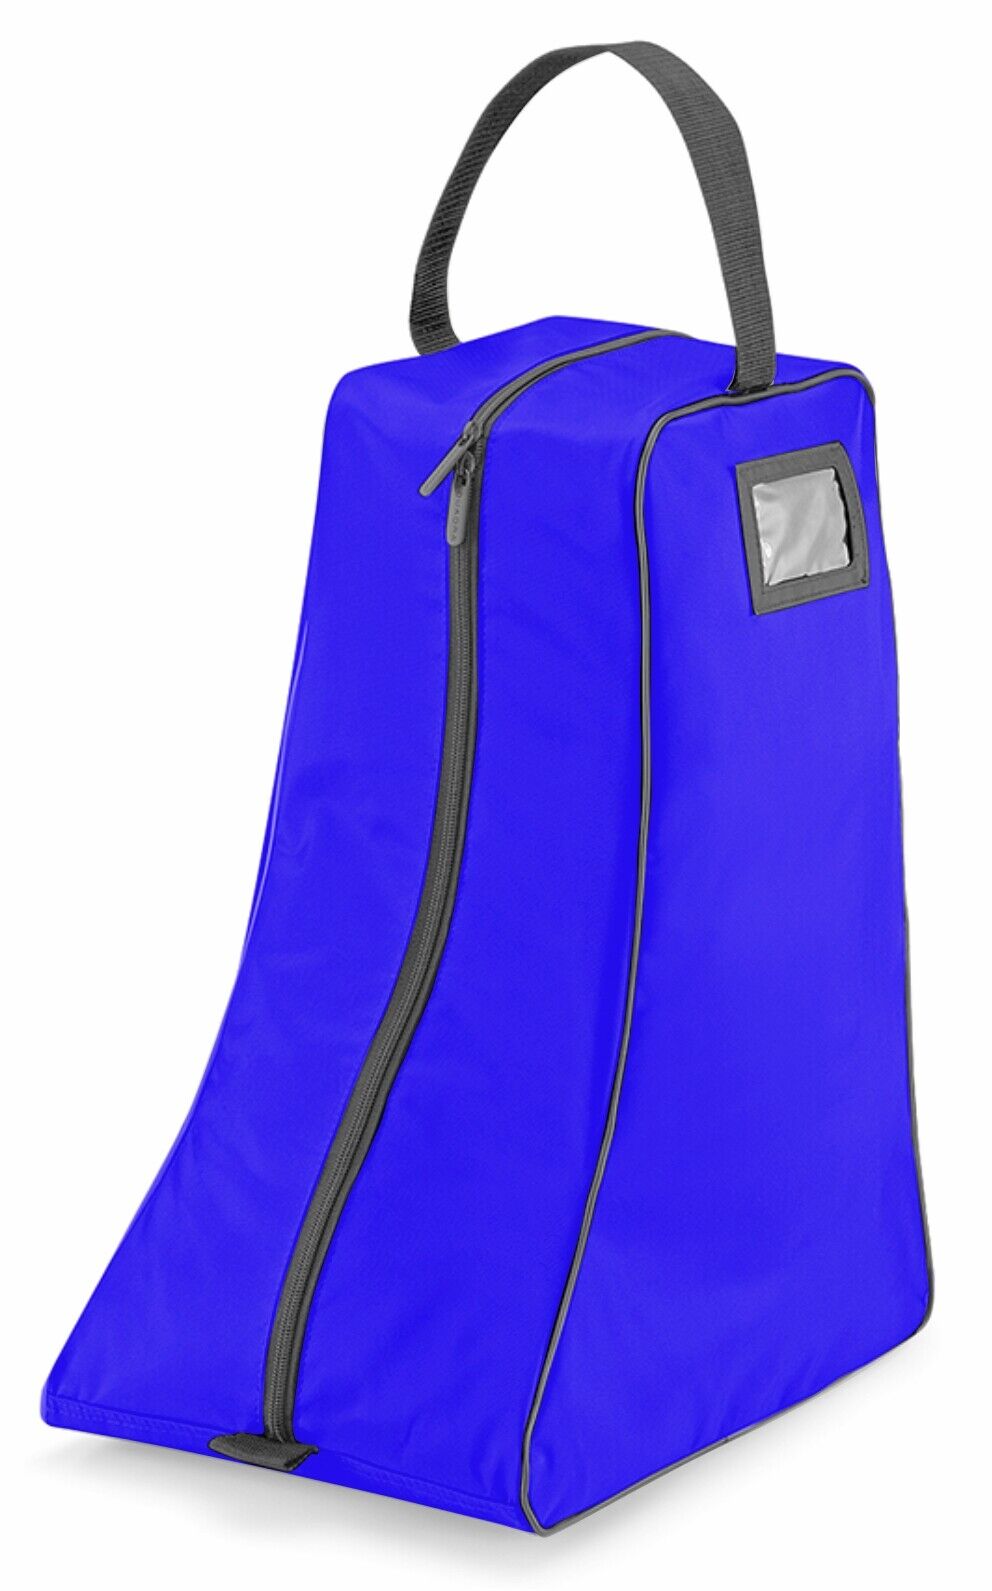 Wellington Wellie Boot Bag Storage Waterproof Fishing Camping Bags